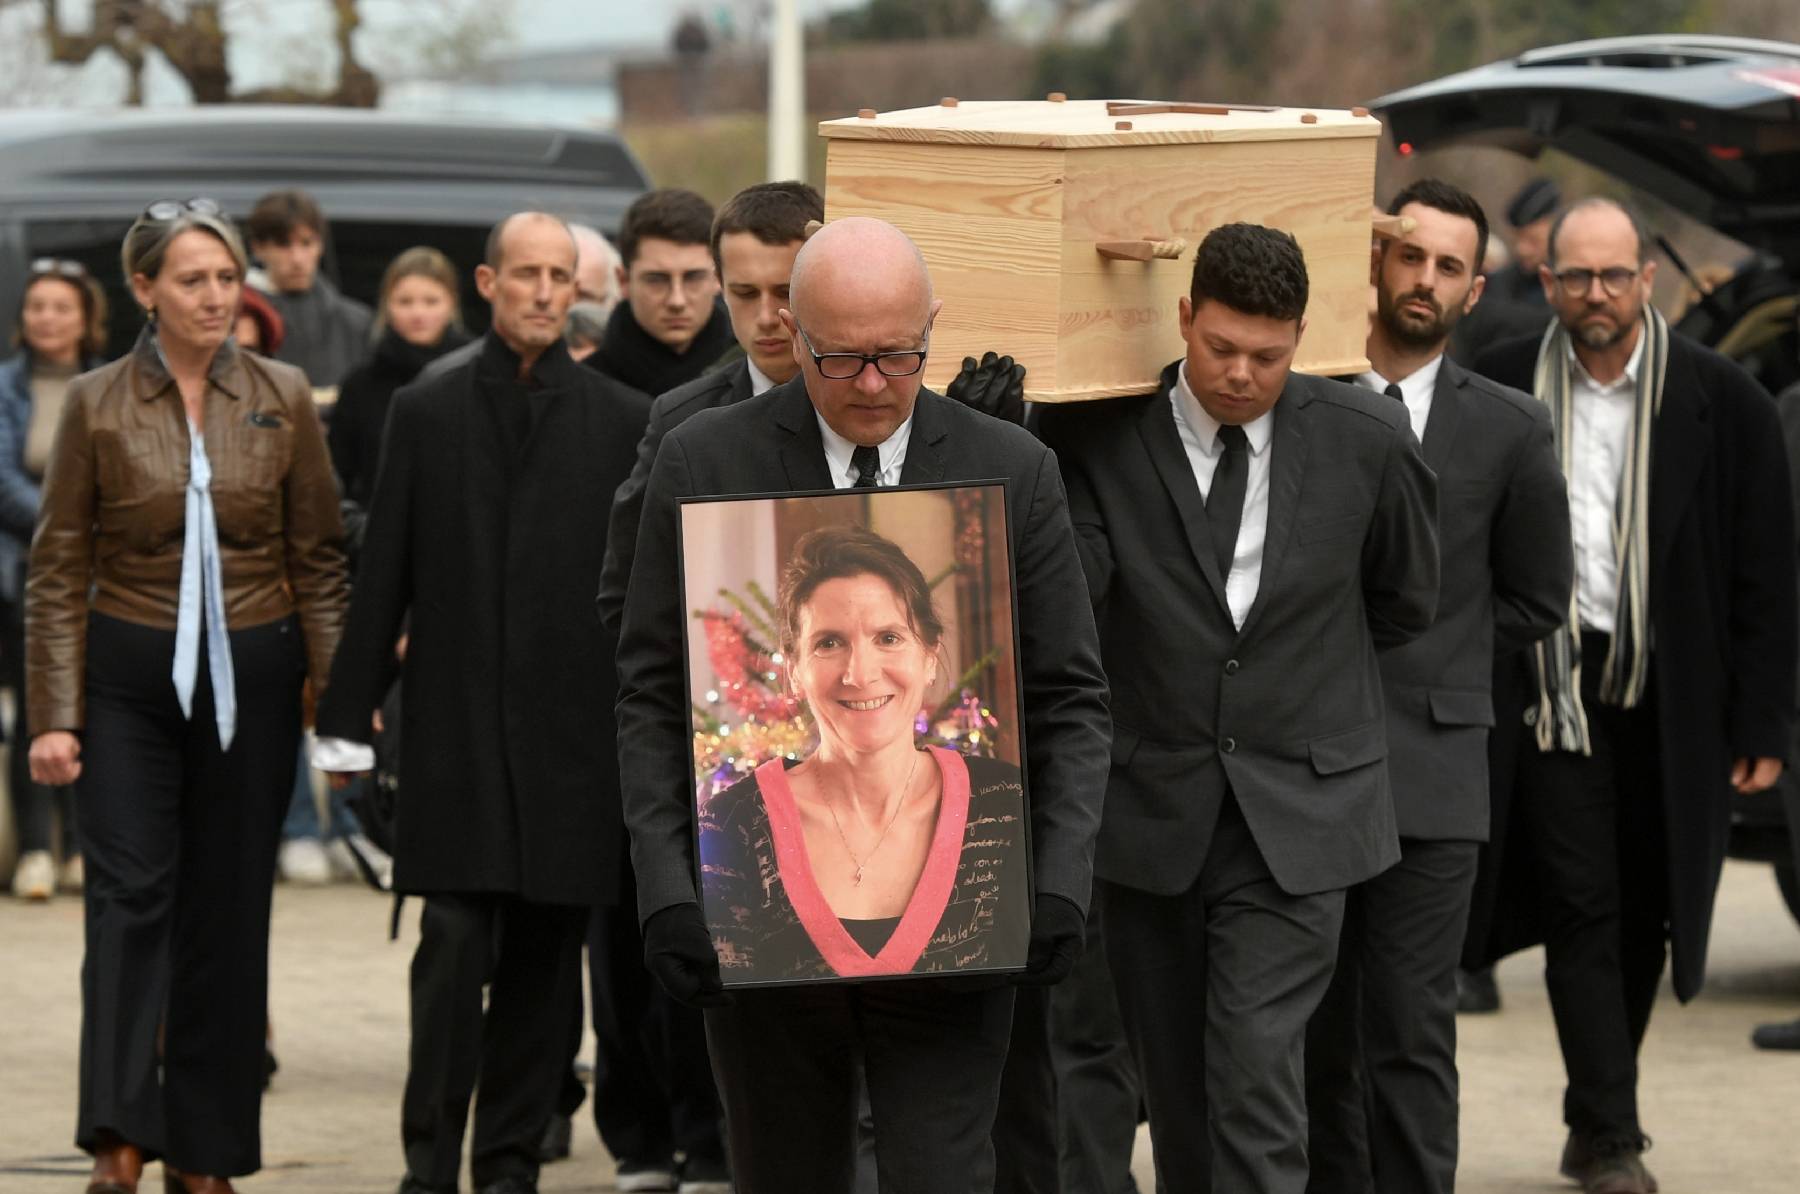 Des centaines de personnes aux obsèques d'Agnès Lassalle, l'enseignante tuée à Saint-Jean-de-Luz